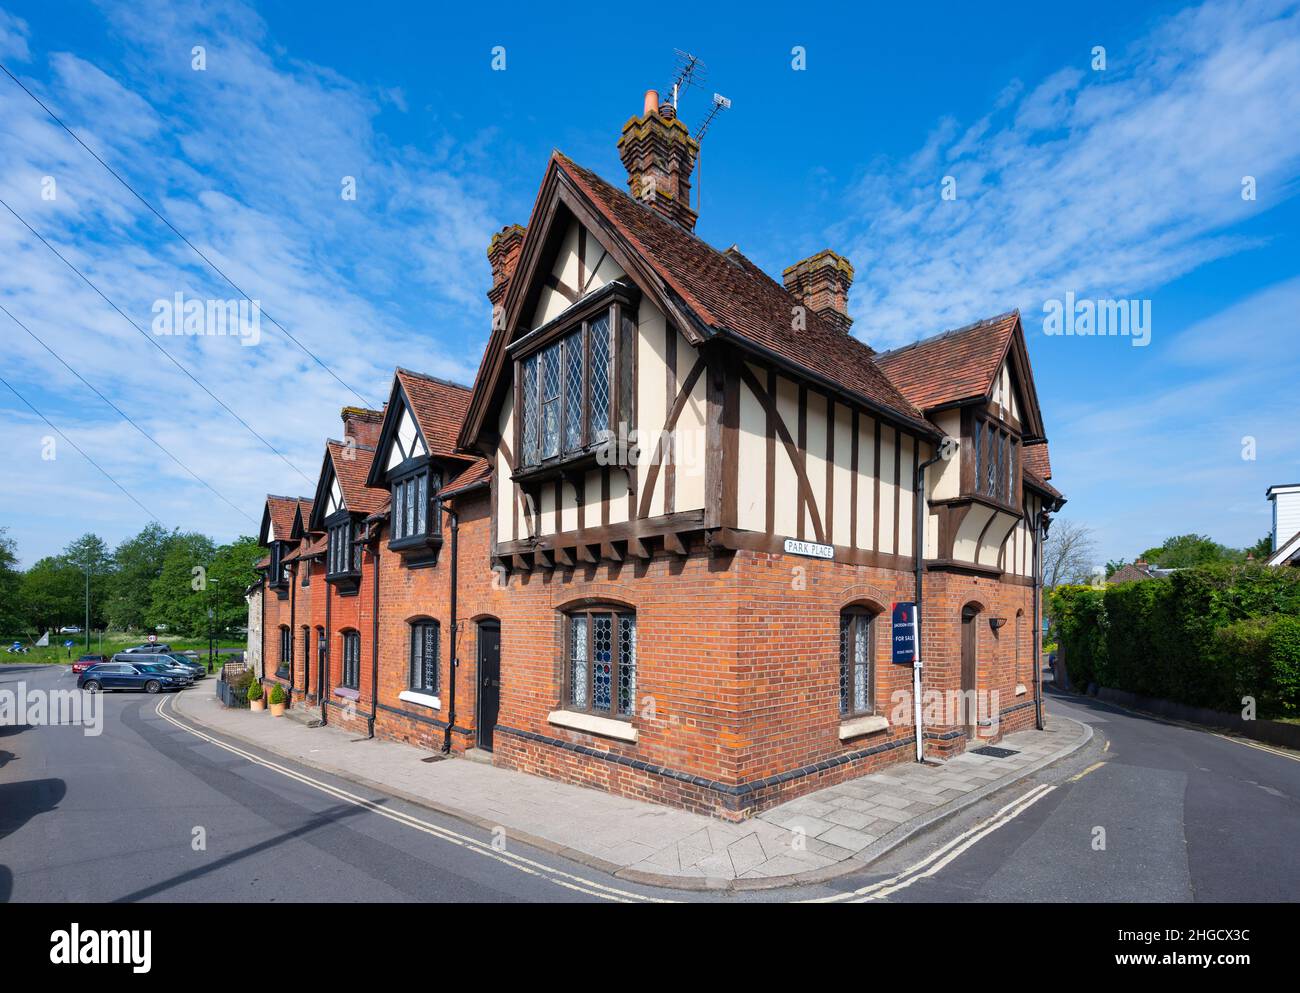 Grande maison de style Tudor ou terrasse de logement à Arundel, West Sussex, Angleterre, Royaume-Uni. Banque D'Images